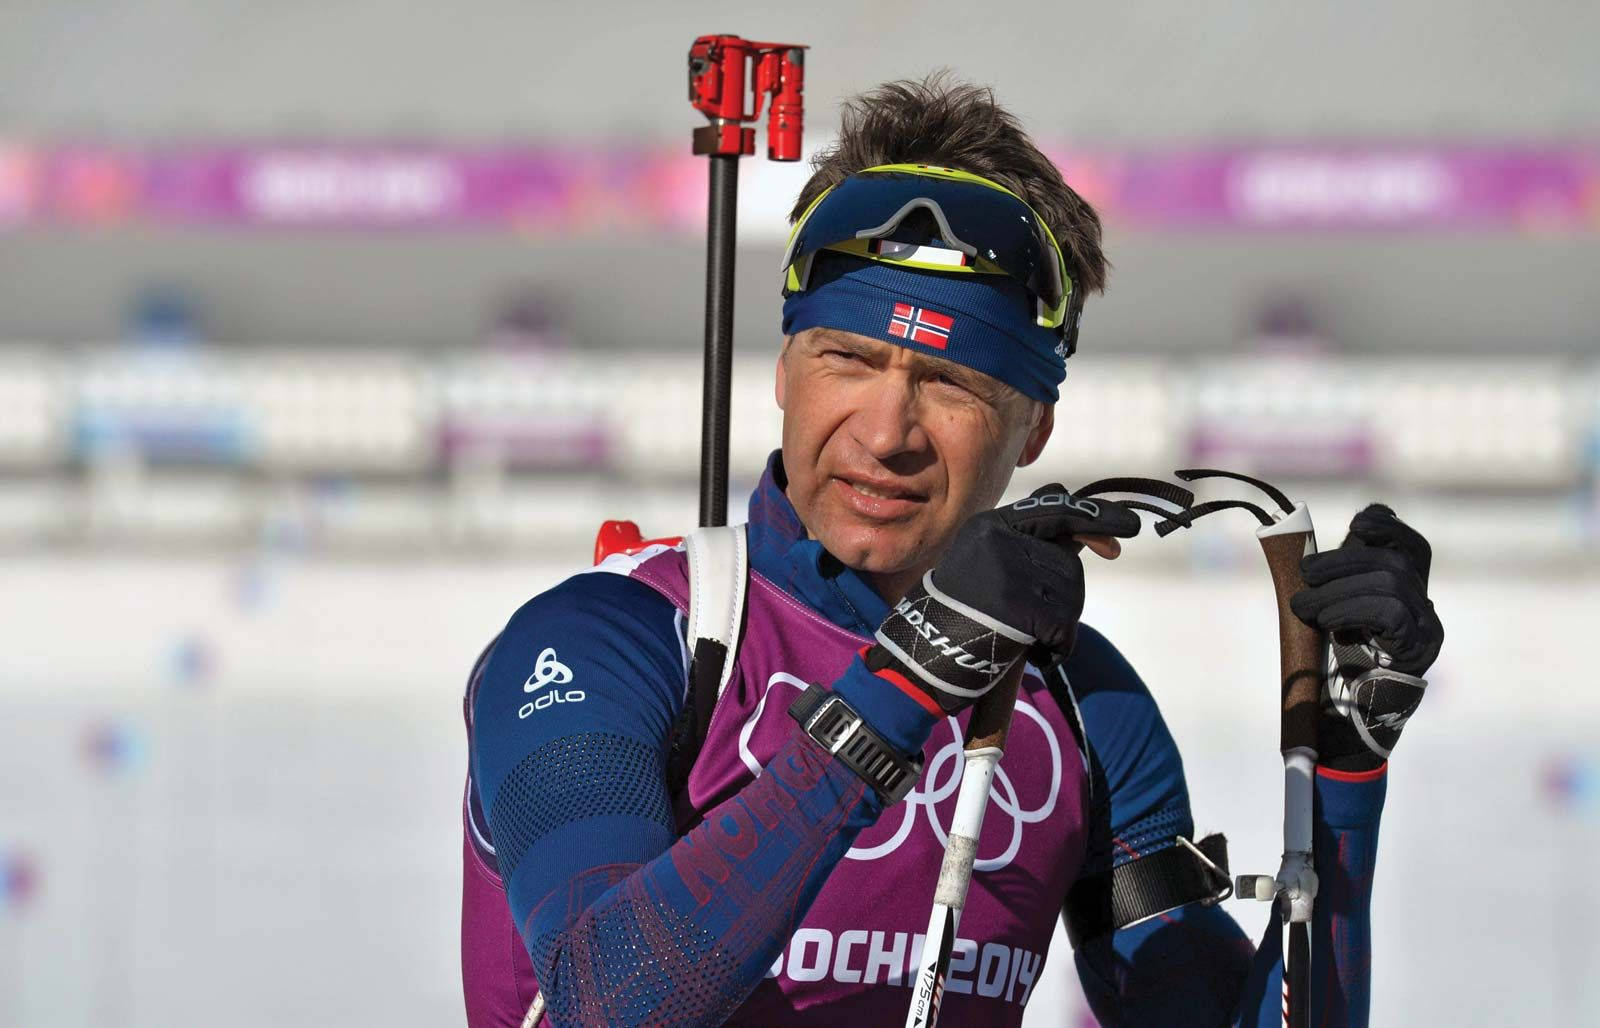 Ole Einar Bjorndalen Biathlon Sochi 2014 Wallpaper